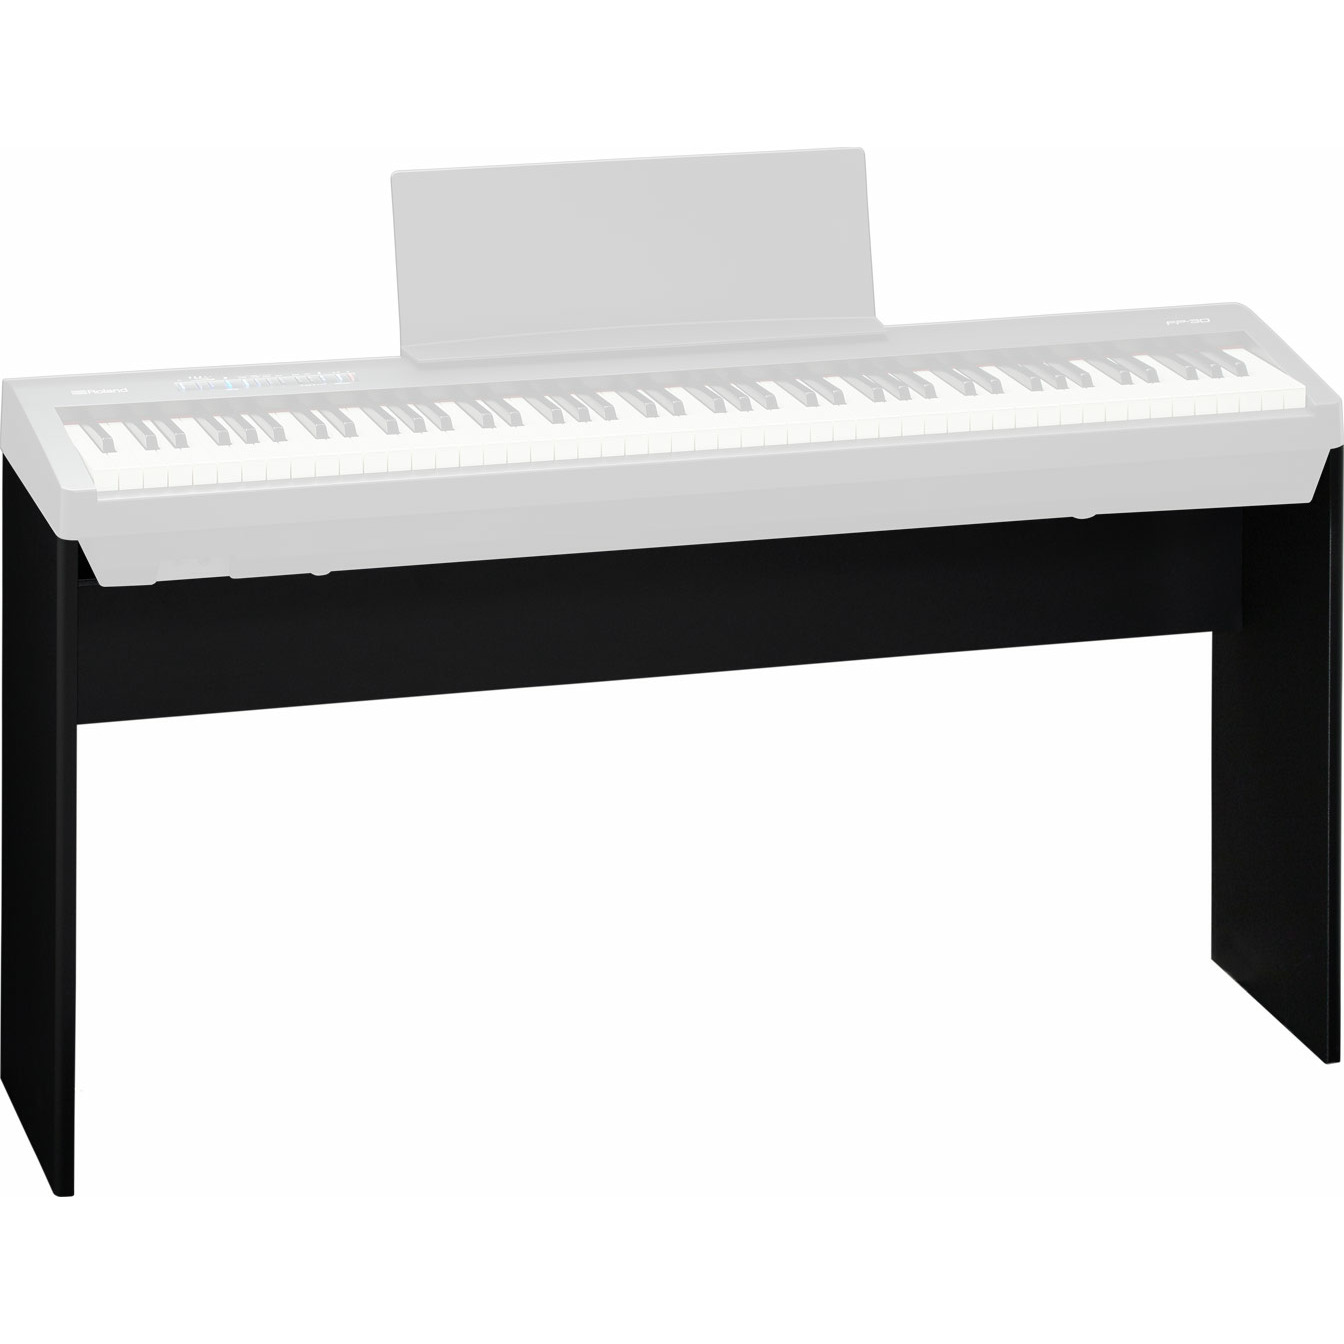 Стойка для клавишных Roland KSC-70-BK